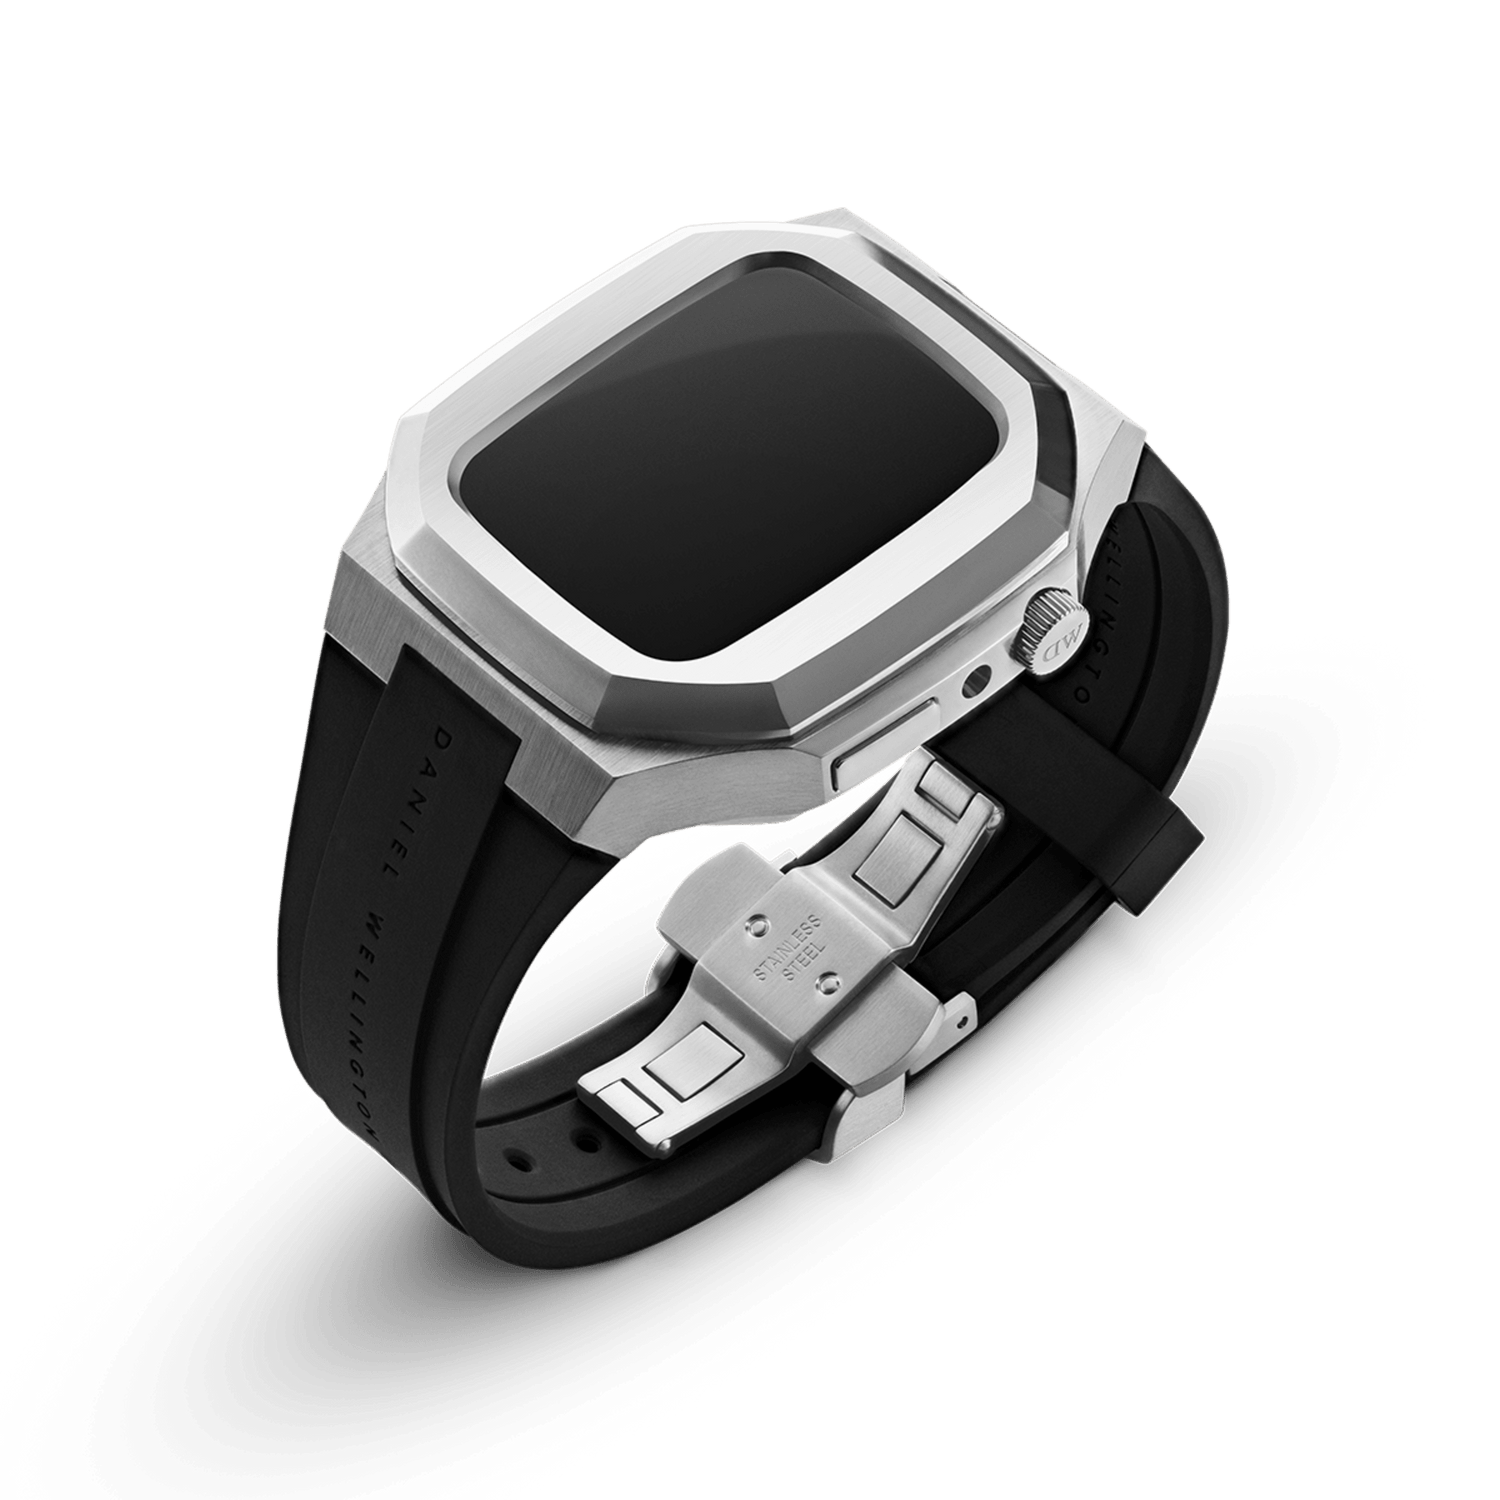 Smartwatch Case - Apple Watch Case Silver - Size 40mm | DW